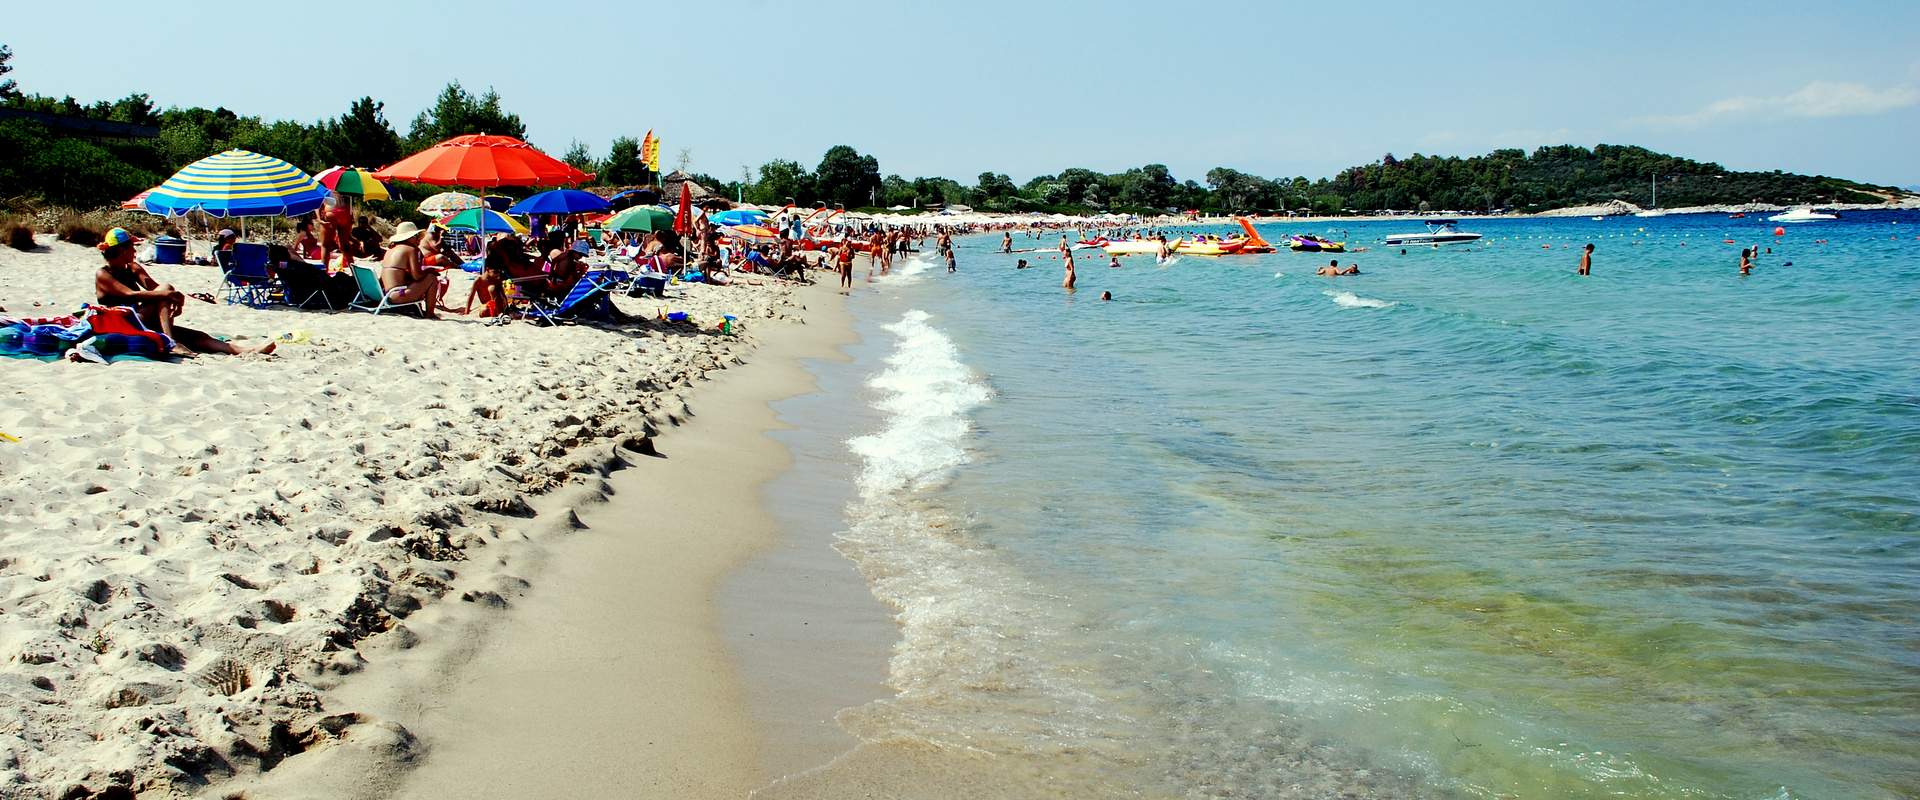 Χρουσώ παραλία (Παλιούρι), Κασσάνδρα, Χαλκιδική, Ελλάδα